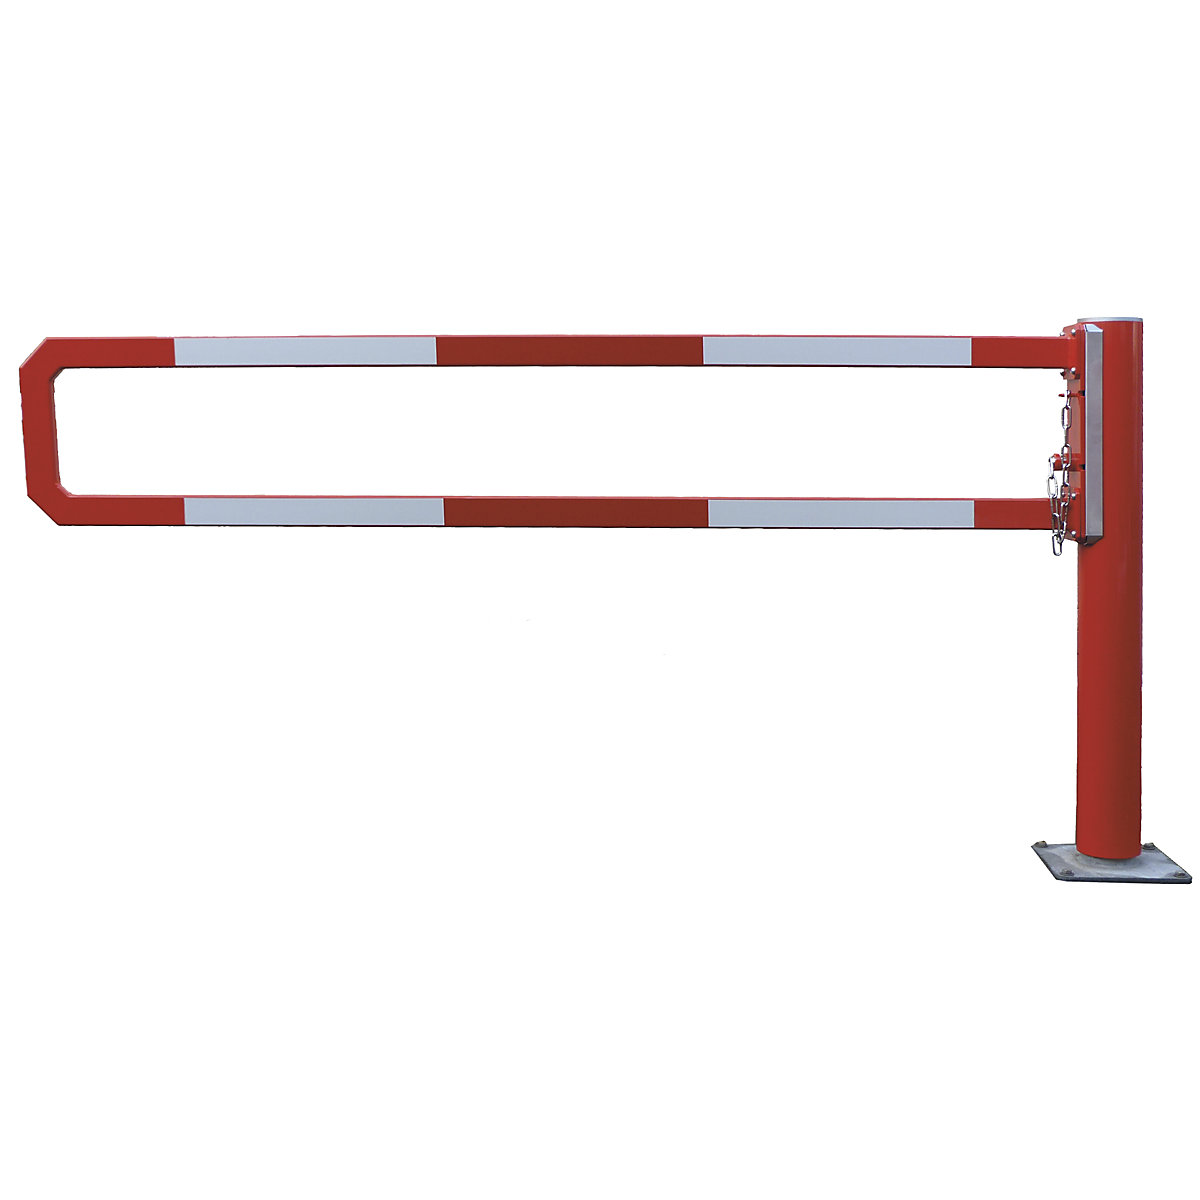 Barrière manuelle tournante – Mannus, largeur utile 1 m, galvanisé à chaud avec peinture époxy rouge-2